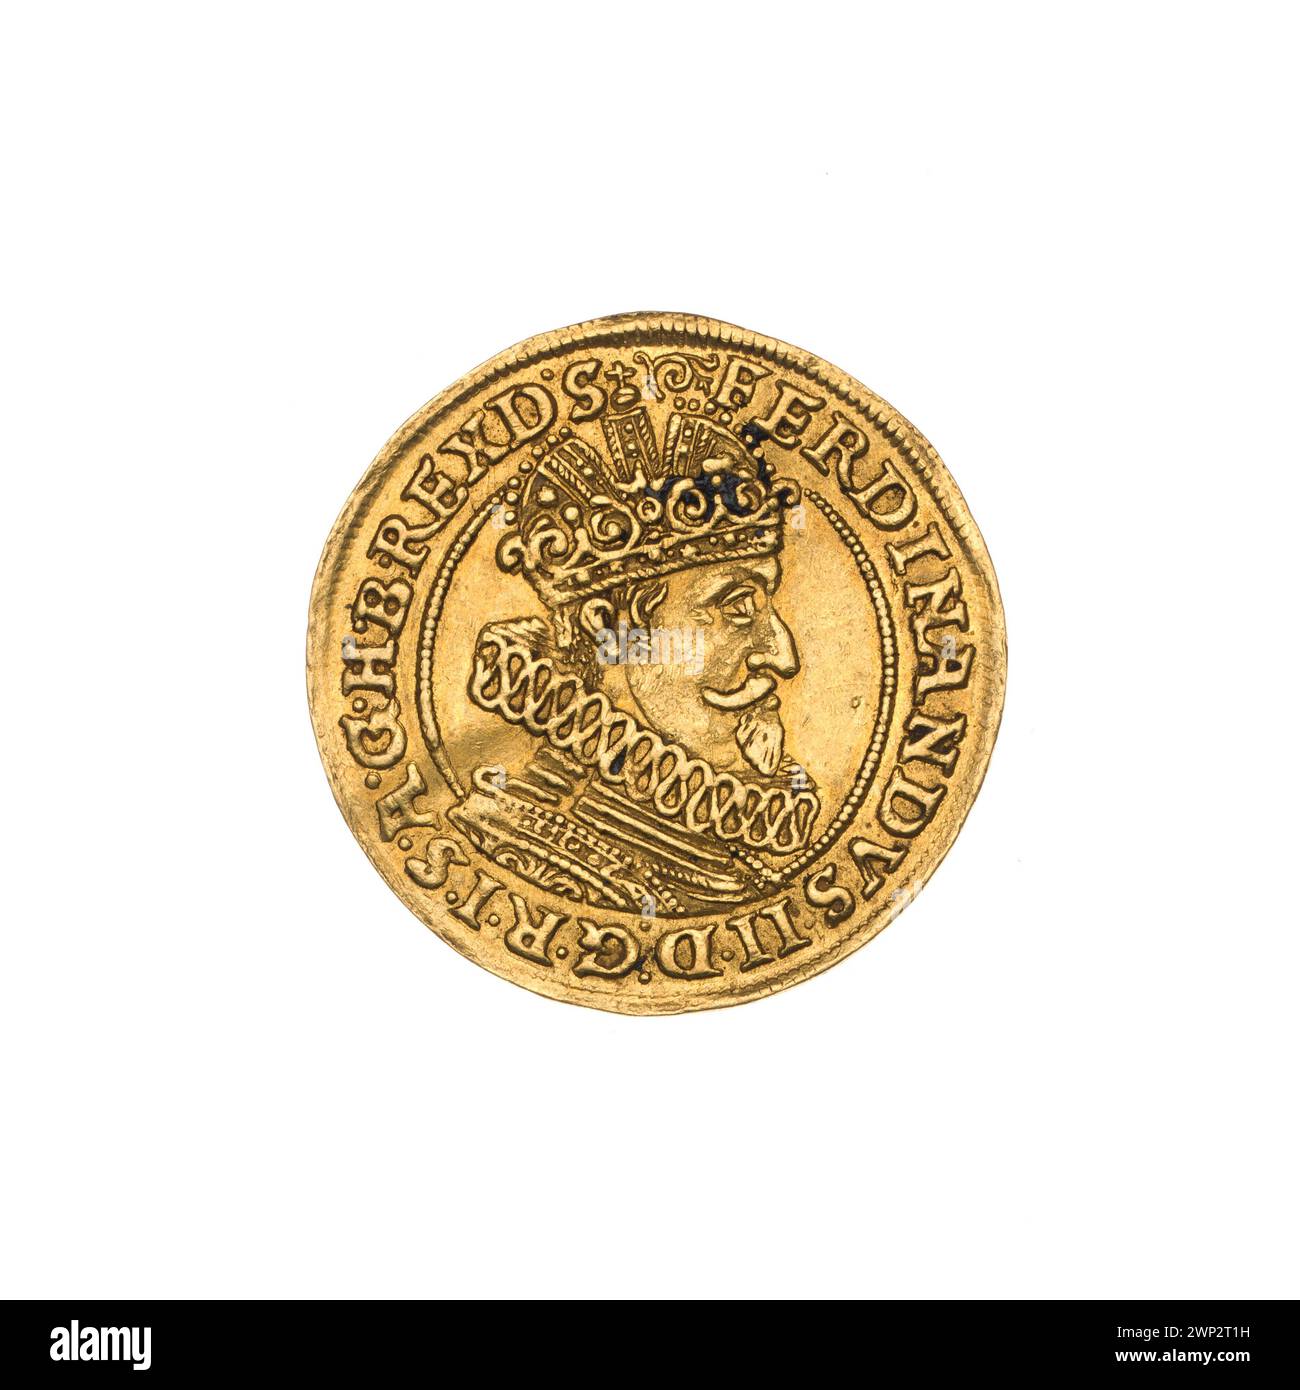 ducato; Ferdynand III Asburgo (imperatore romano-tedesco; 1637-1657); 1630 (1630-00-00-1630-00-00); Ferdinando III (imperatore romano-tedesco-1627-1657), Ferdynand III (imperatore romano-tedesco-1627-1657)-iconografia, Asburgo (famiglia), peso della giustizia (iconogr.), Wrocław (stemma), Krunty (iconogr.) , Stemma urbano (iconogr.), monete cittadine, busto, busto maschile, busto maschile in crisi, busto maschile in armatura, ritratto maschile a destra, ritratti, ritratti dei sovrani, scudo a quattro binari con campo cardiaco, stemma, stemma, stemma della città di Wrocław , scudi, bilance Foto Stock